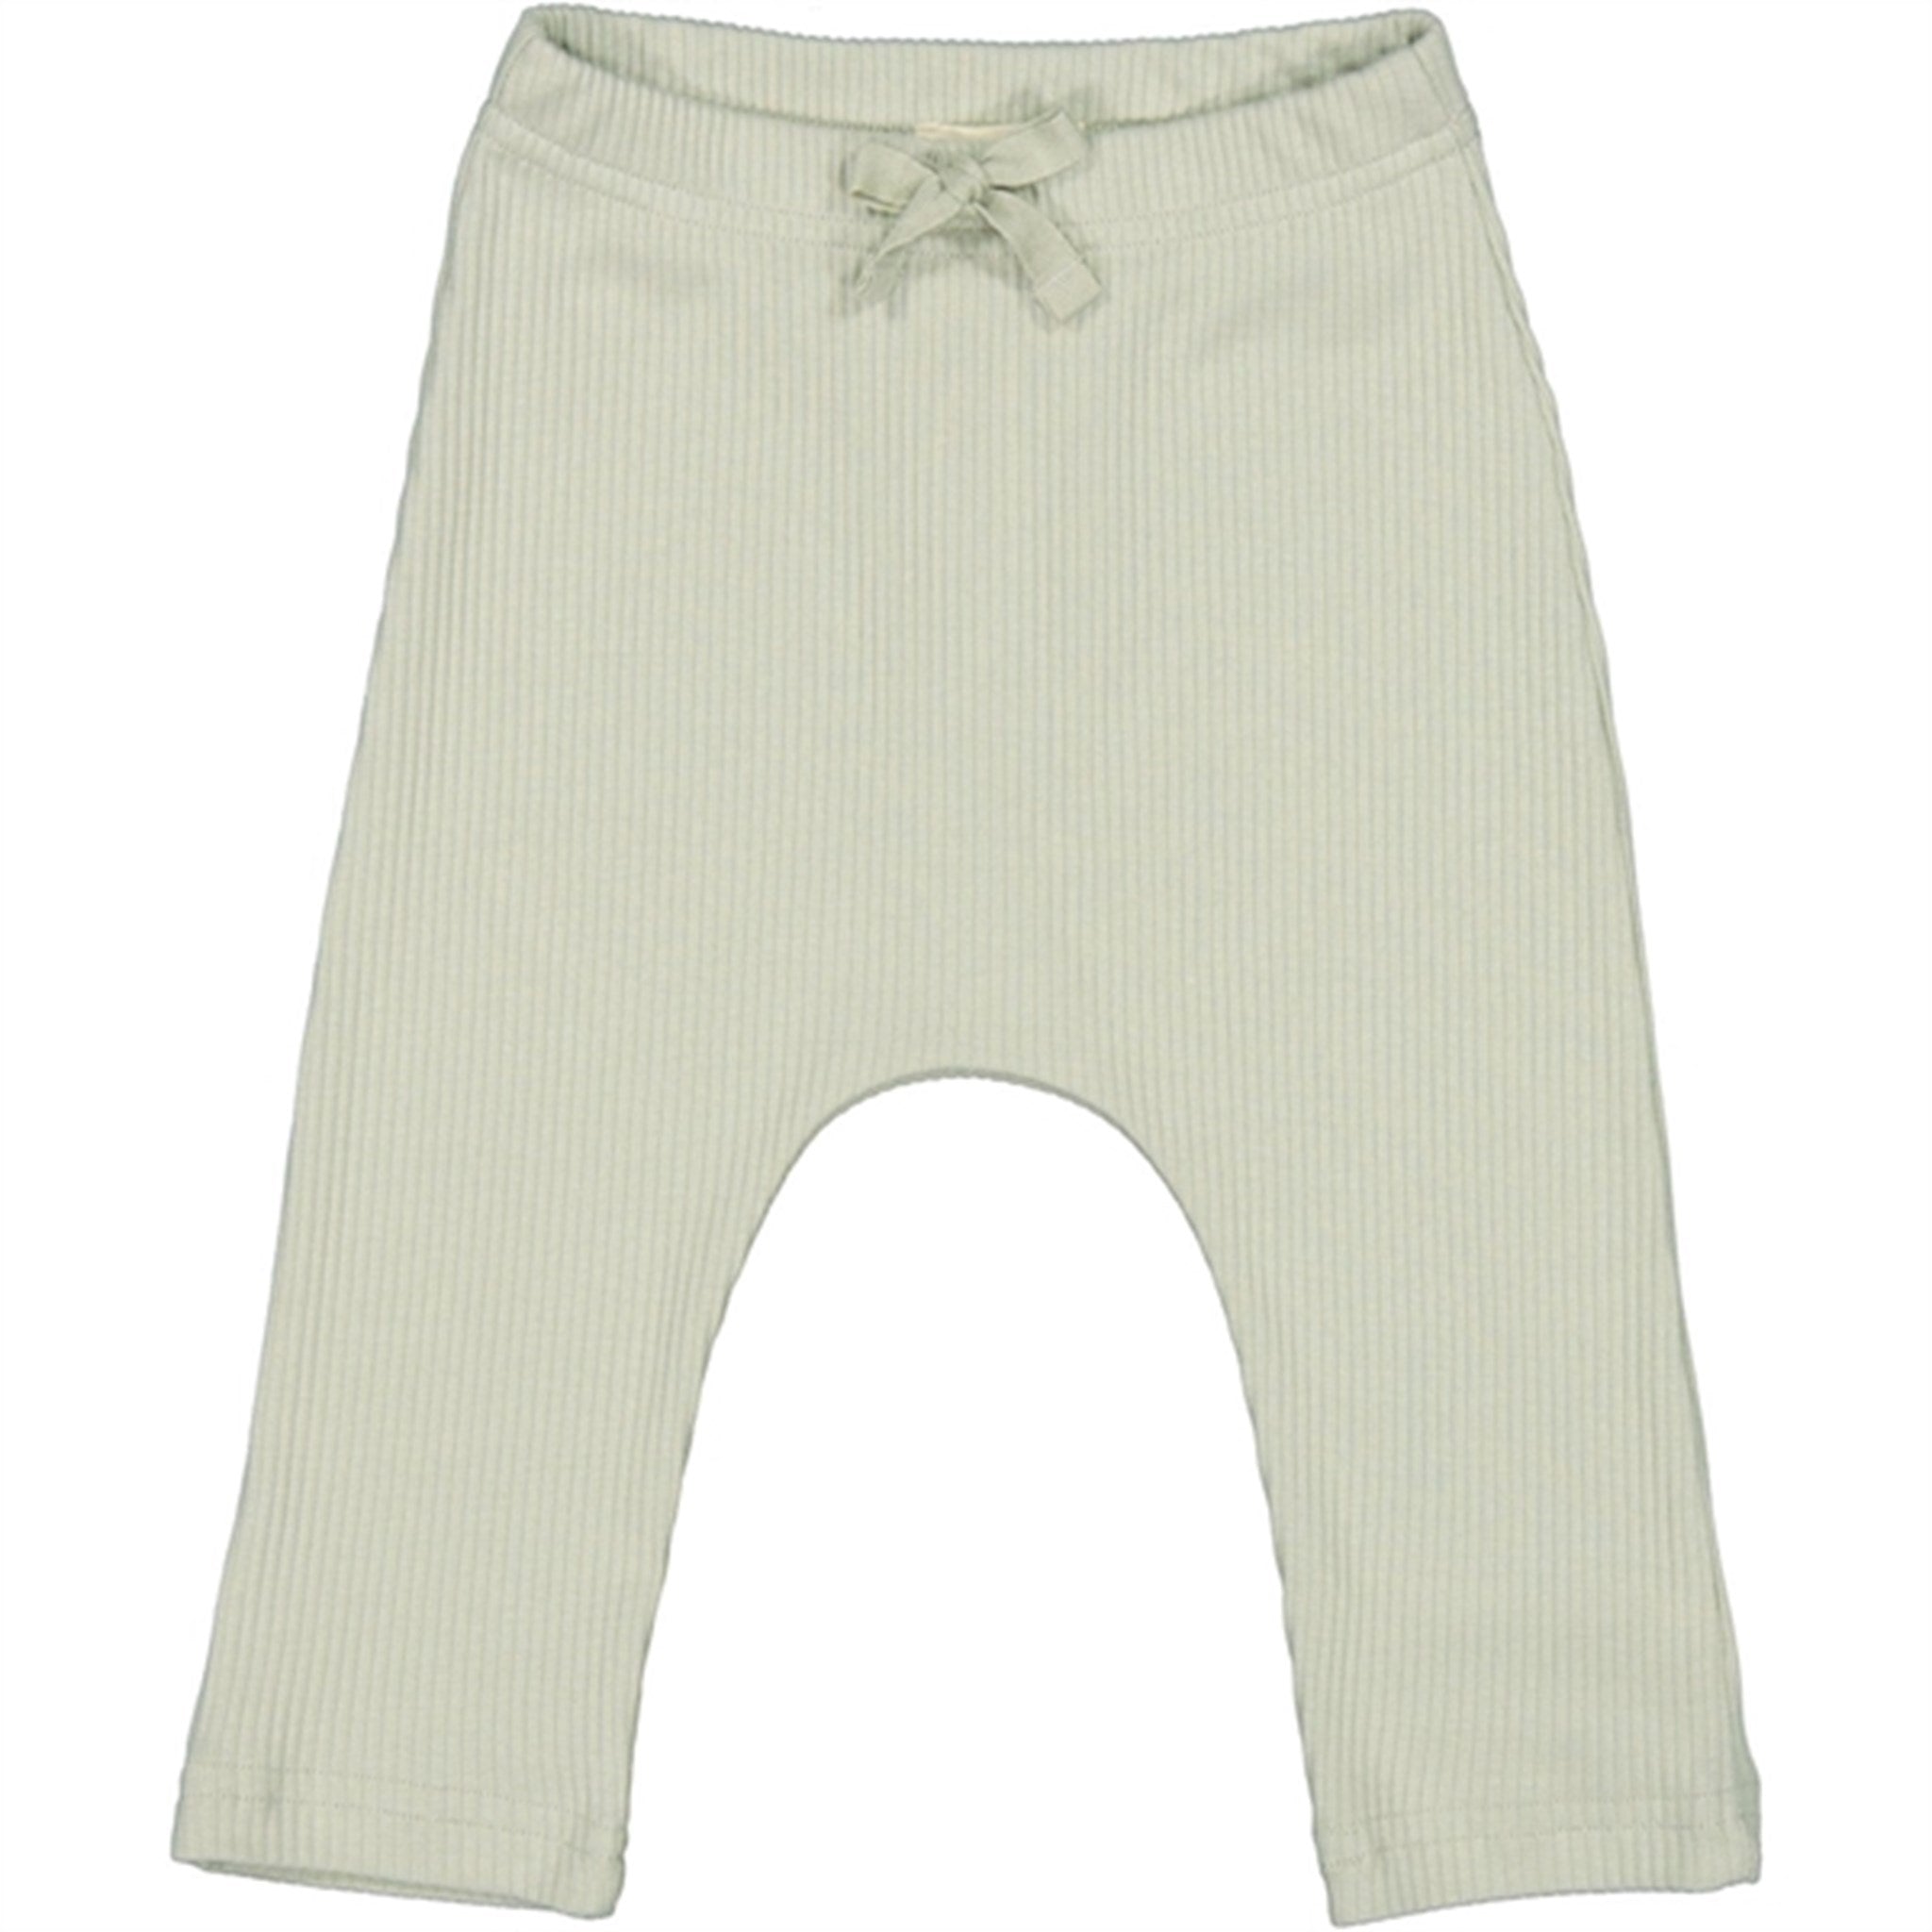 MarMar Modal White Sage Pico Pants